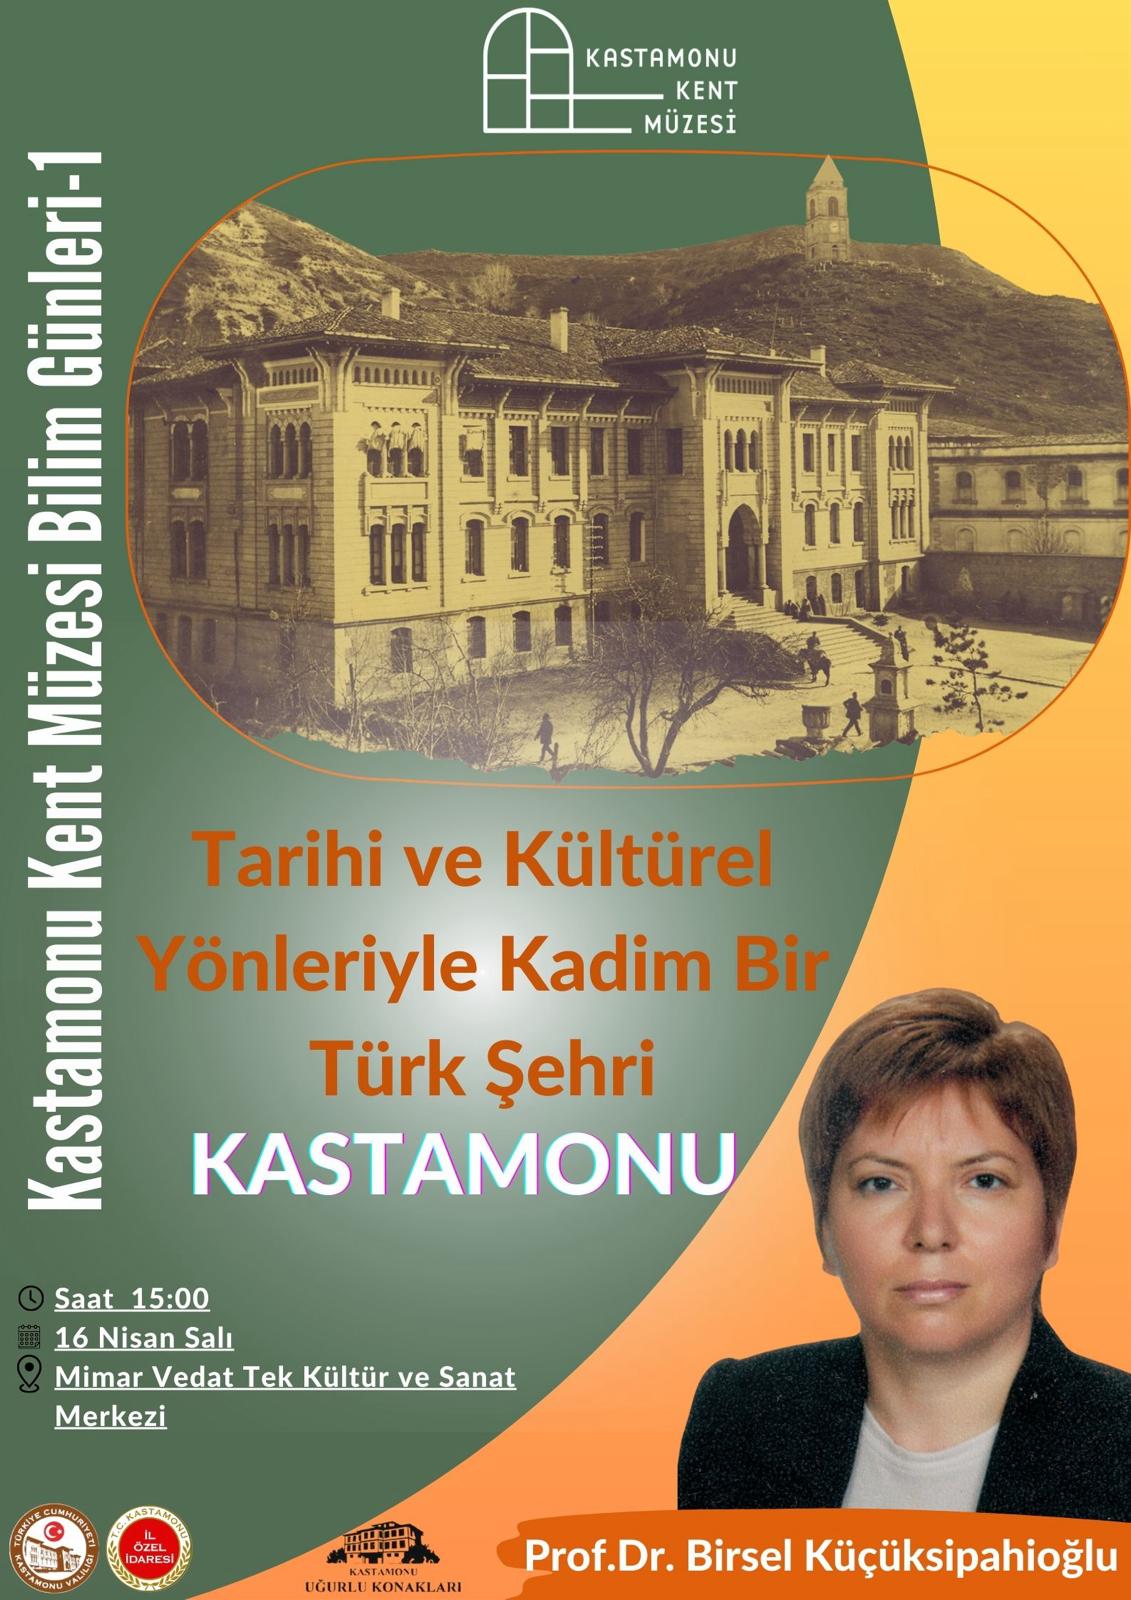 Kastamonu'nun Kültür Hayatına Yeni Bir Pencere Açılıyor-1